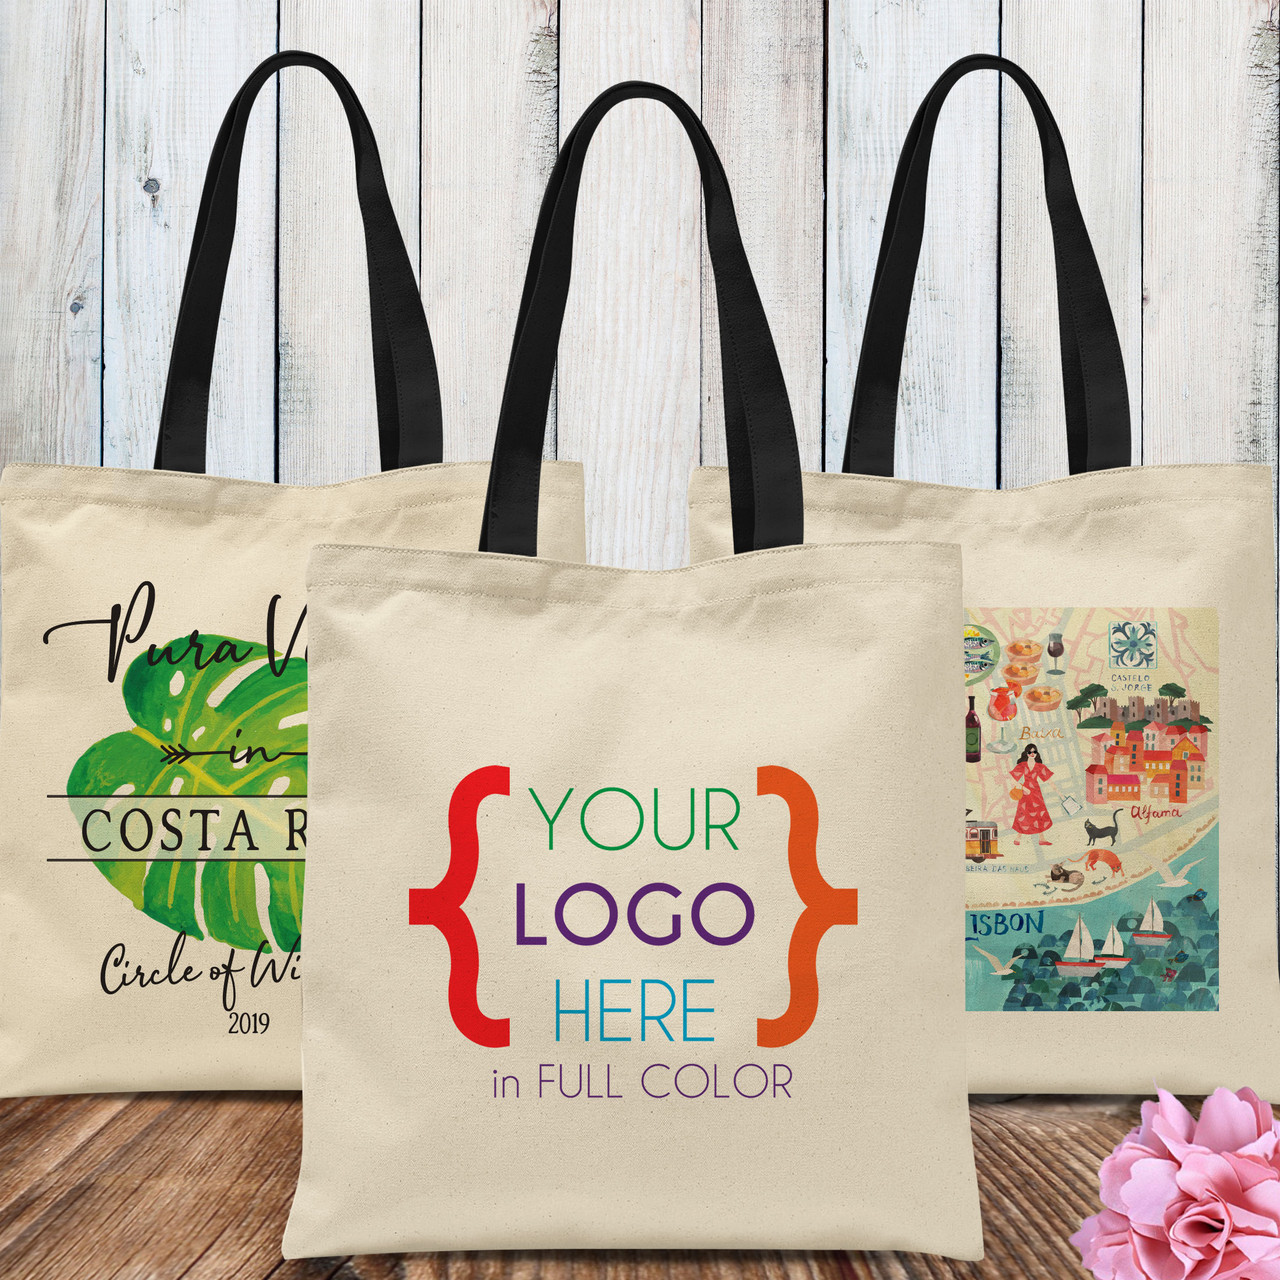 Landscape, simple, modern, colorful  Tote Bag for Sale by TFullerPrints